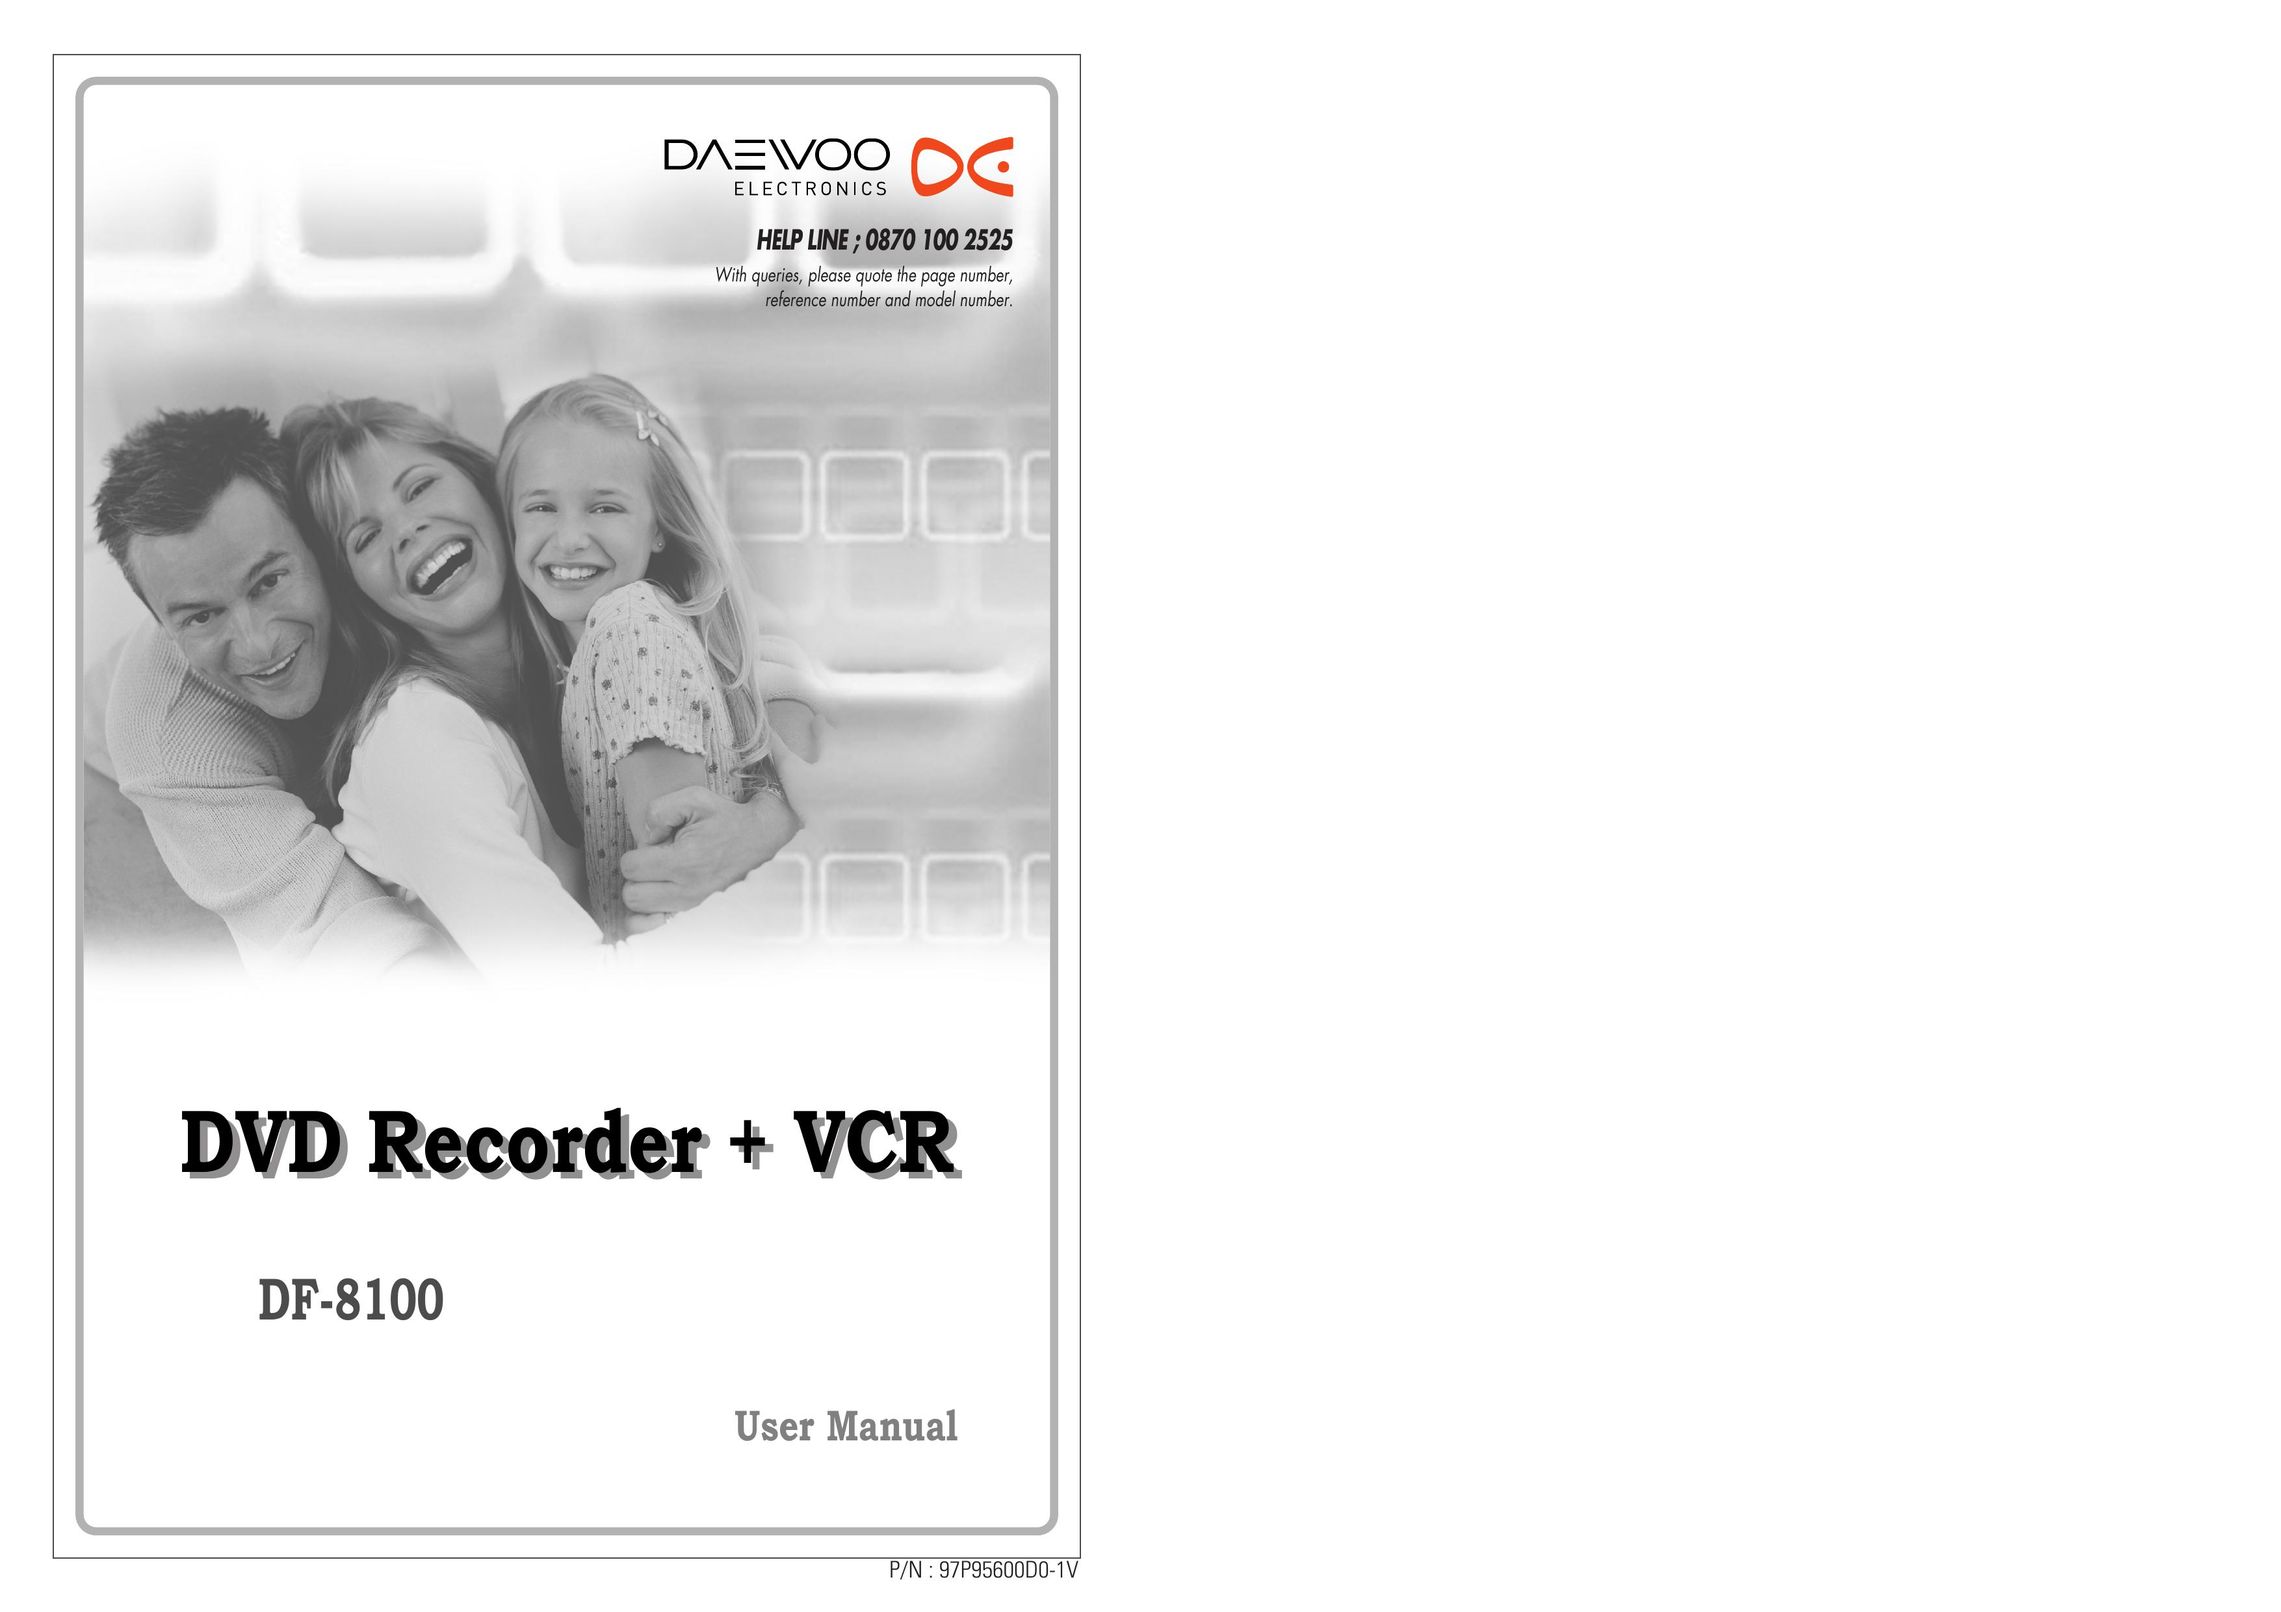 Daewoo DF-8100 DVD Recorder User Manual